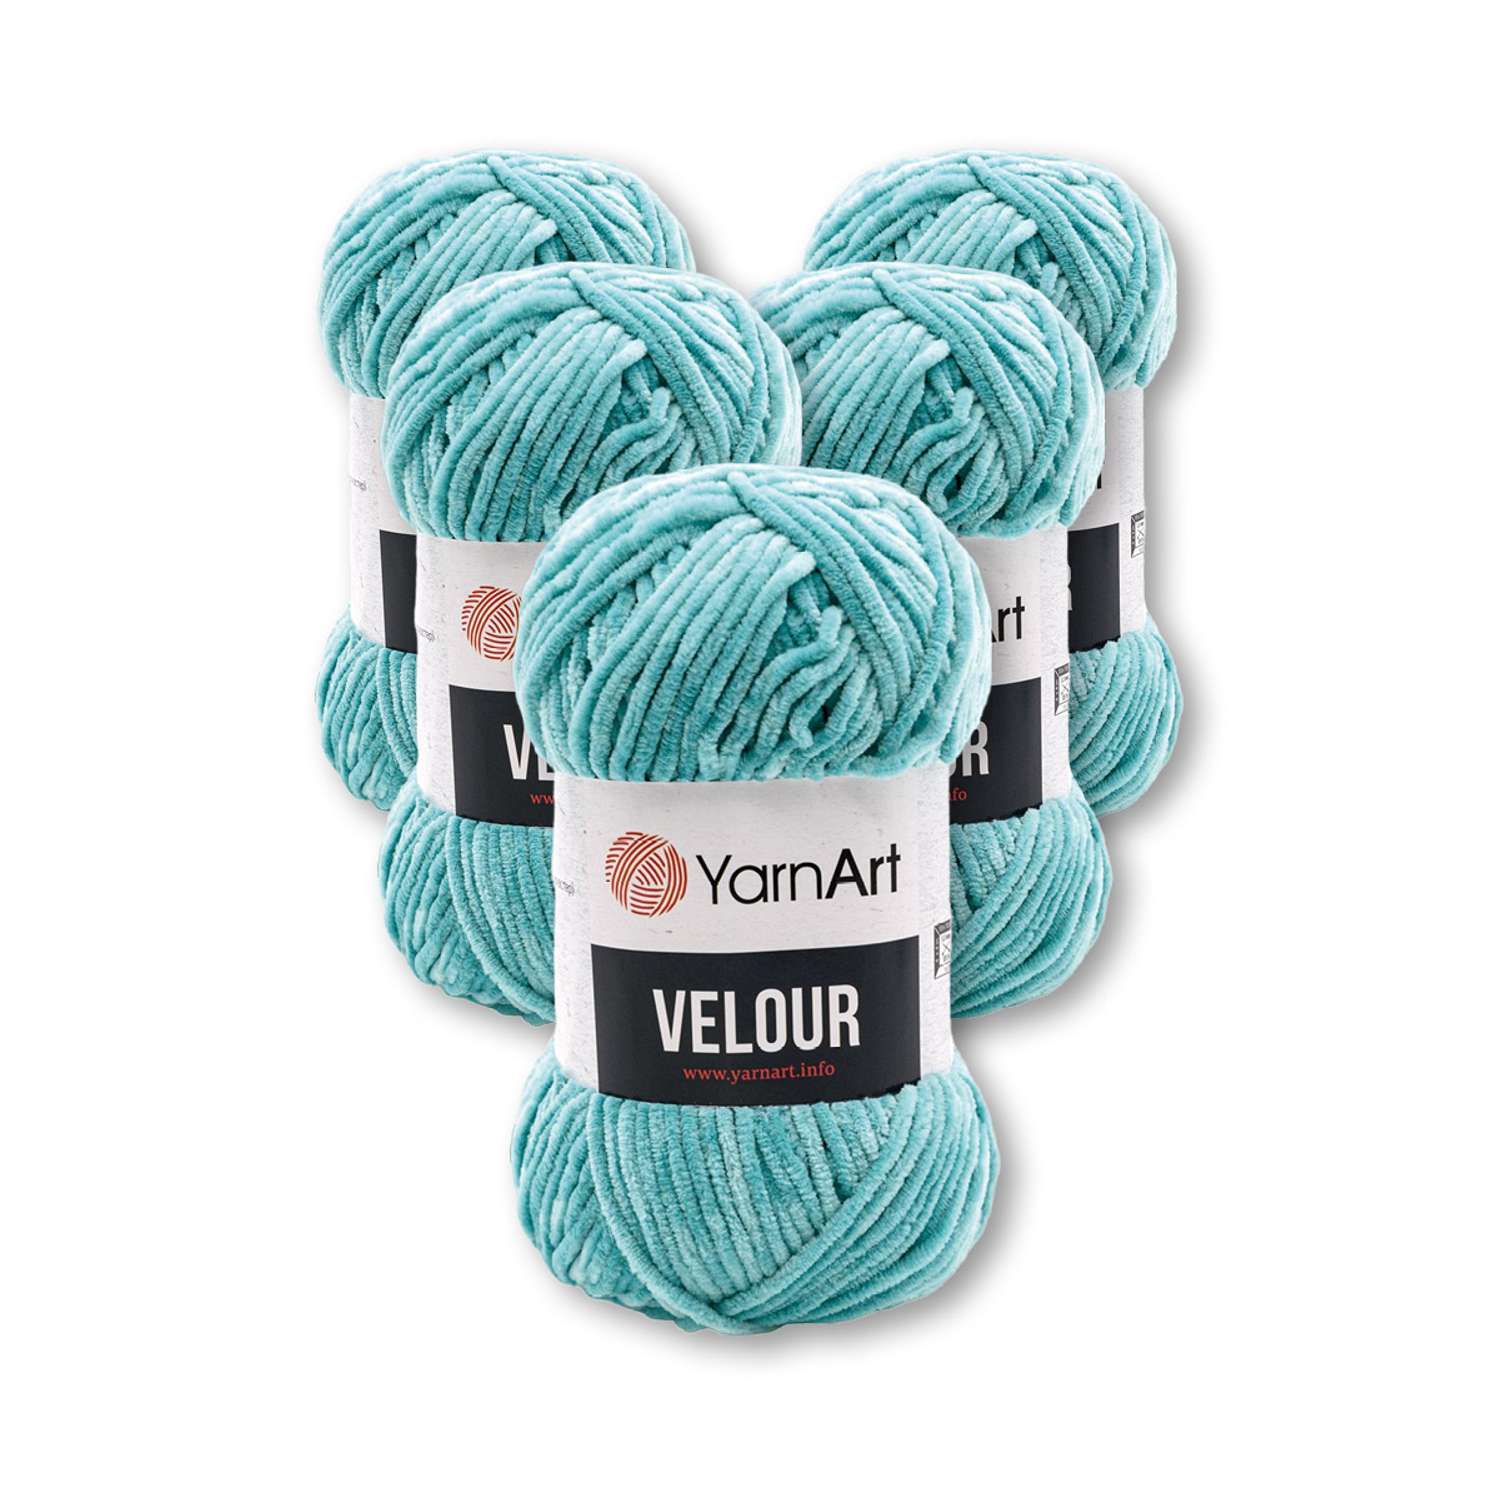 Пряжа для вязания YarnArt Velour 100 г 170 м микрополиэстер мягкая велюровая 5 мотков 864 голубая бирюза - фото 3